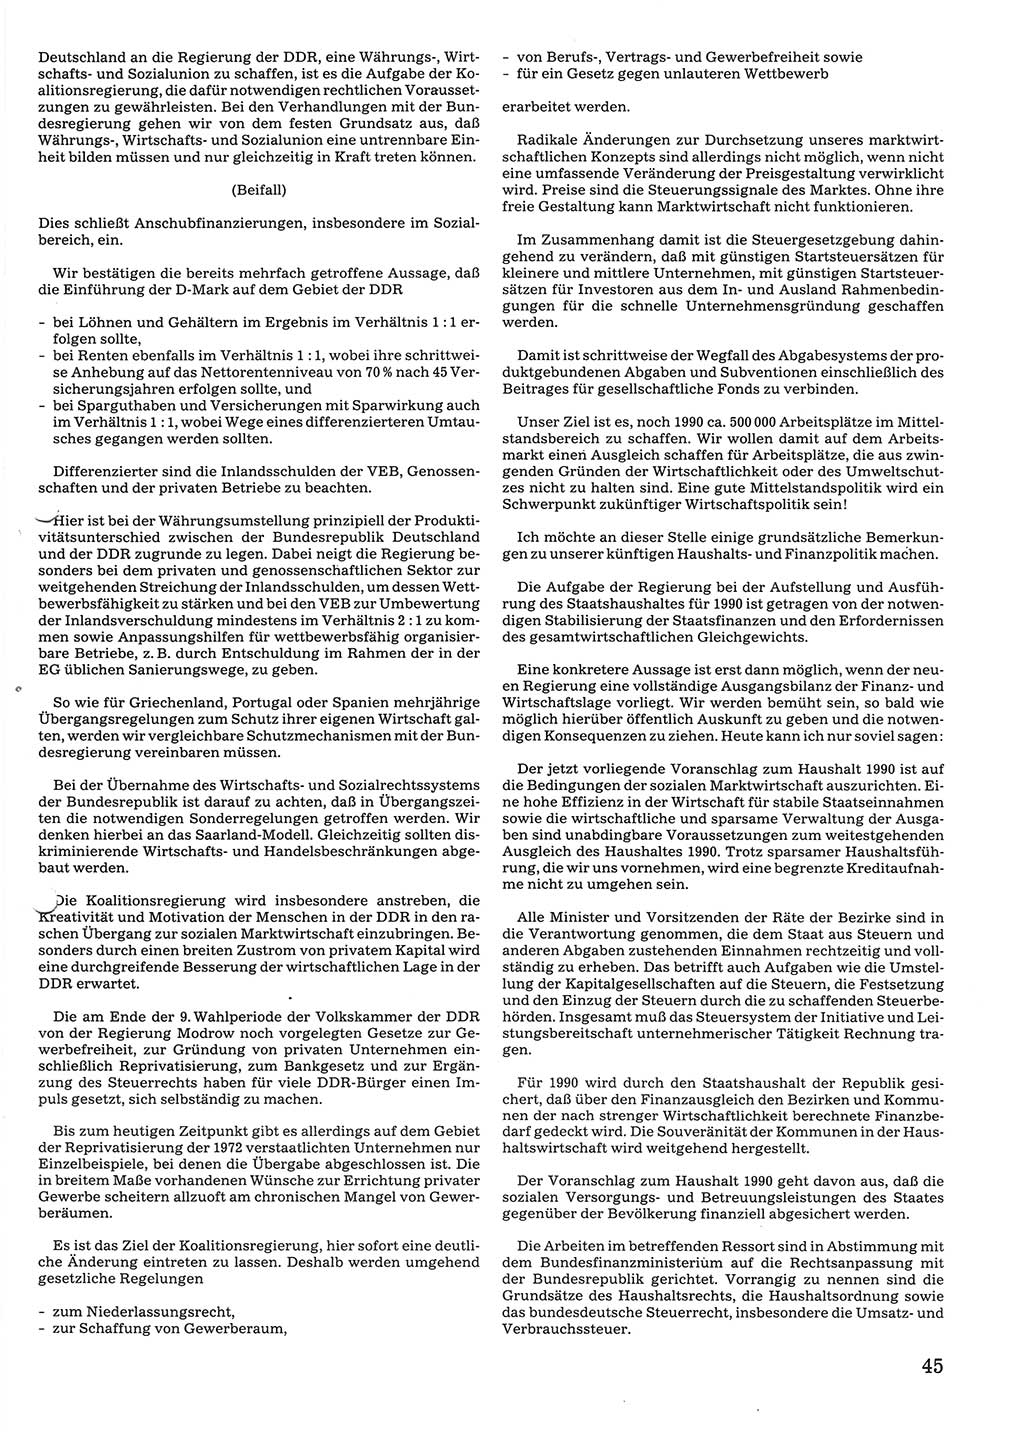 Tagungen der Volkskammer (VK) der Deutschen Demokratischen Republik (DDR), 10. Wahlperiode 1990, Seite 45 (VK. DDR 10. WP. 1990, Prot. Tg. 1-38, 5.4.-2.10.1990, S. 45)